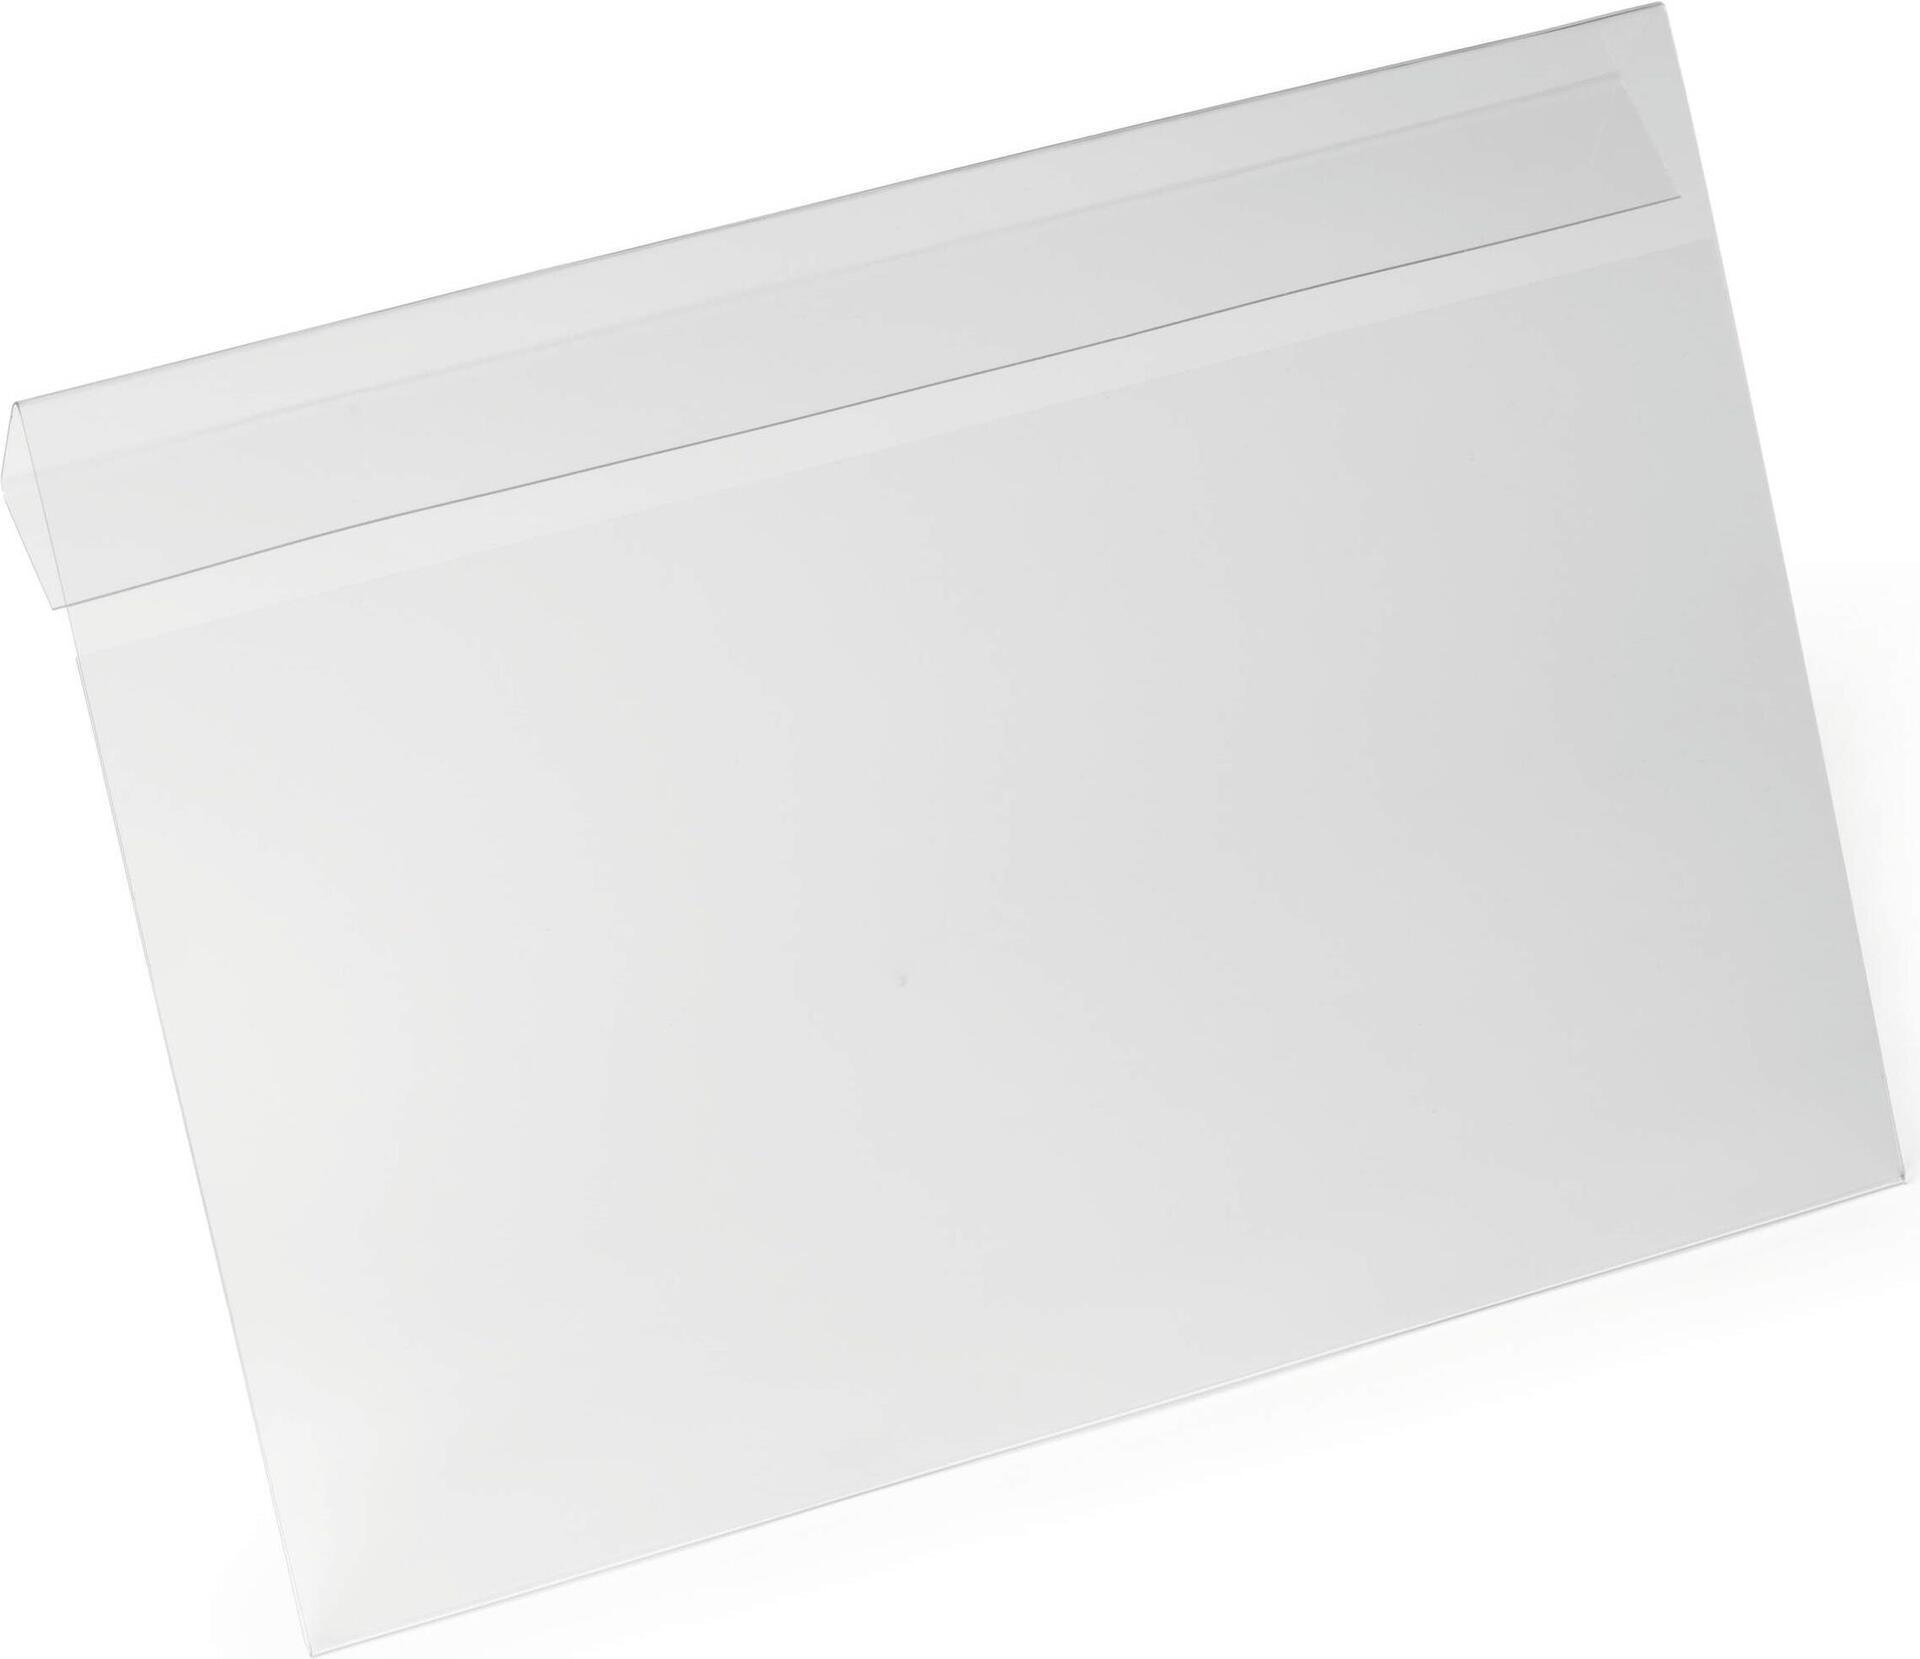 DURABLE Kennzeichnungstasche HARD COVER mit Falz A4 quer, Farbe: transparent, Art. Nr. 116319, 1 PAK (116319)